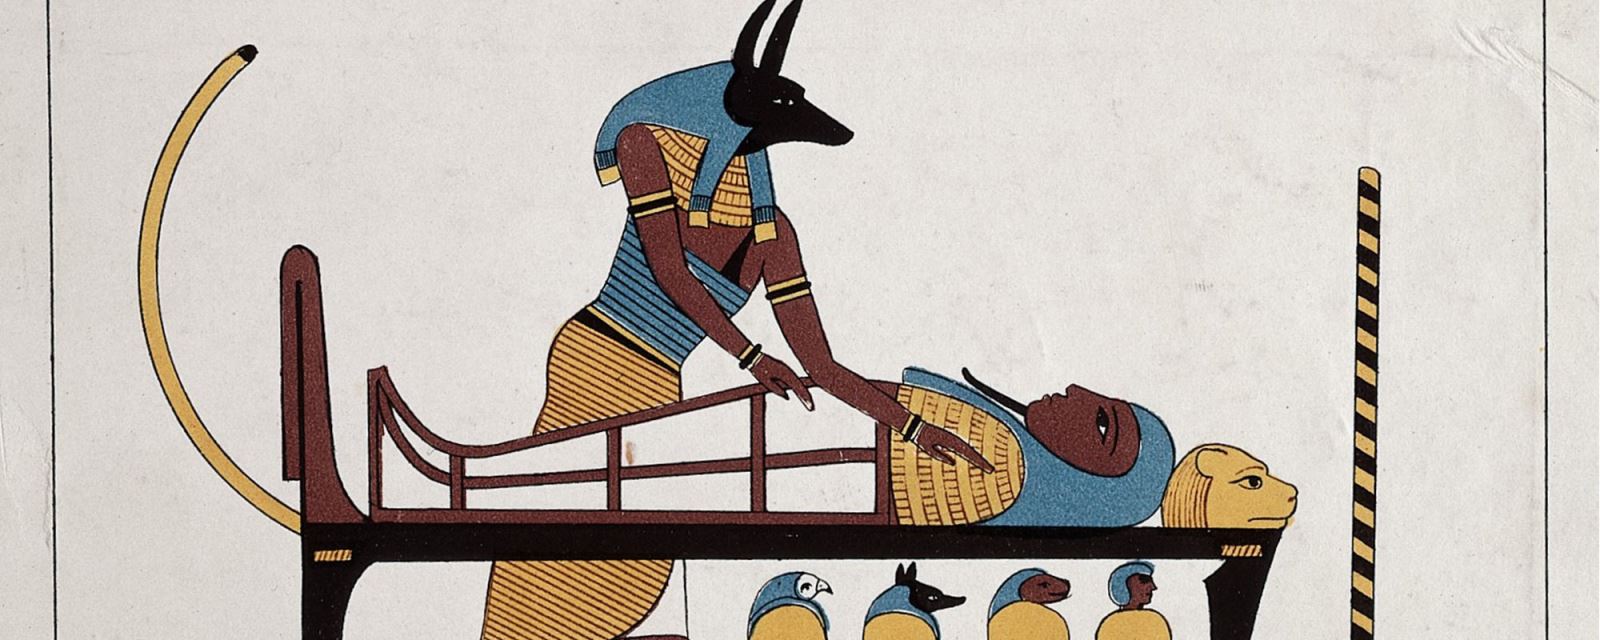 Anubis -Vị thần chết Ai Cập được tôn vinh bởi 8 triệu con chó ướp xác | baotintuc.vn